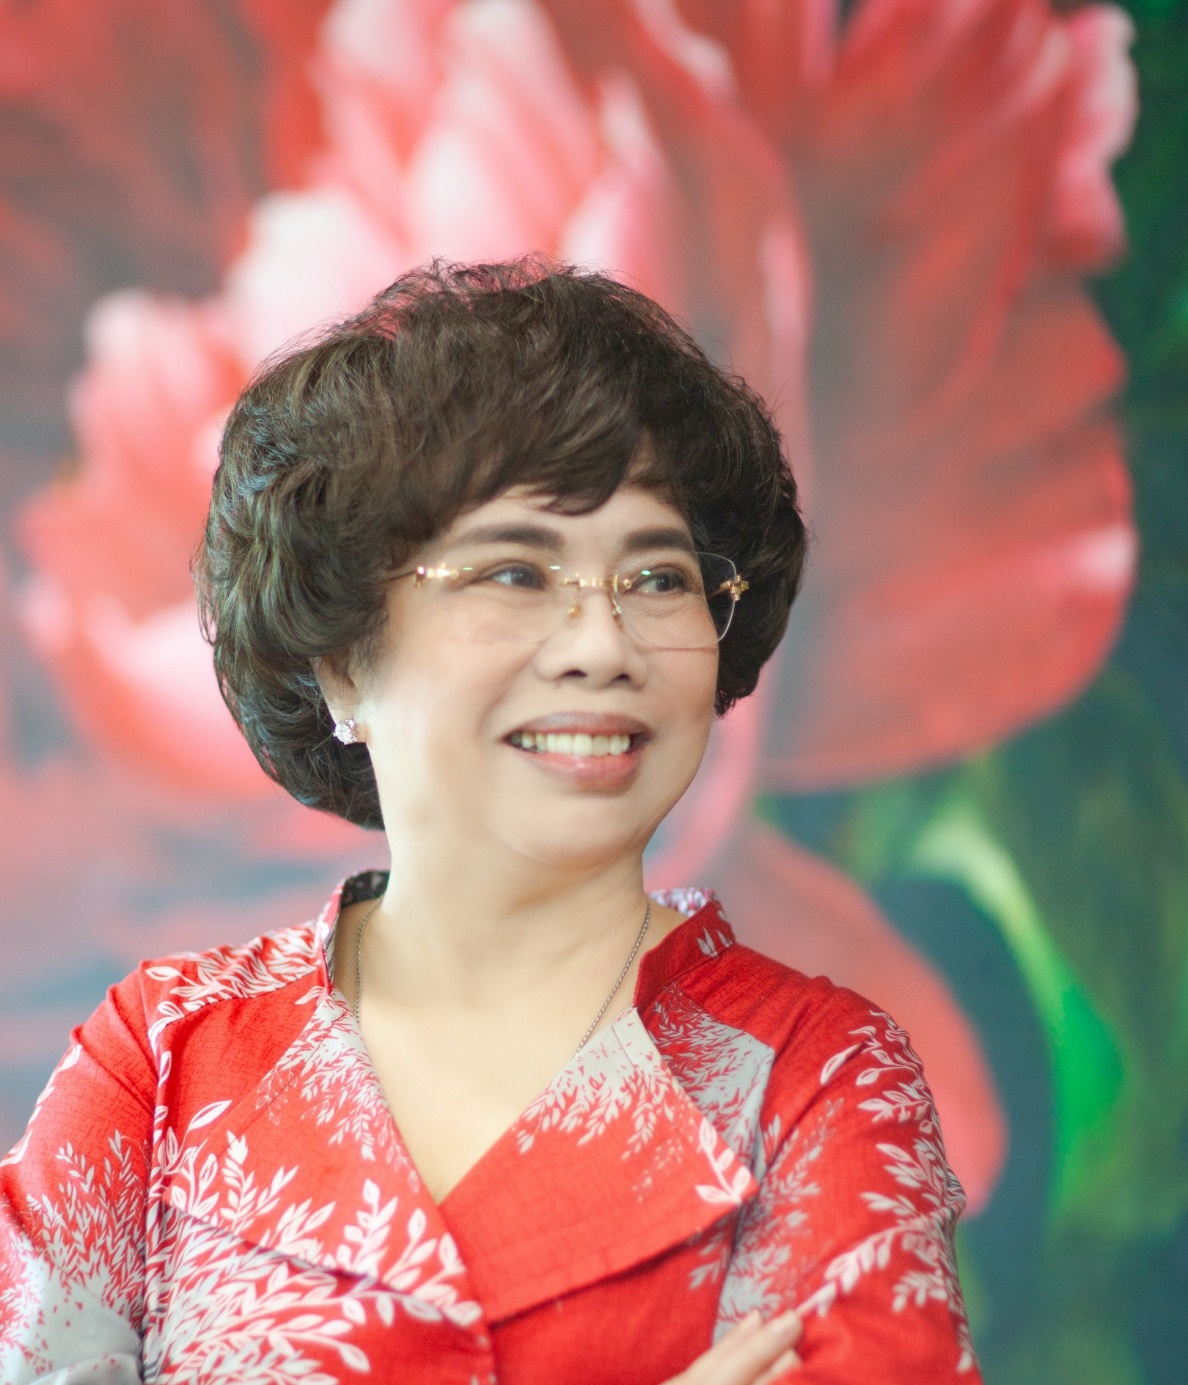 Anh hùng Lao động Thái Hương được tôn vinh Top 50 Phụ nữ châu Á có ảnh hưởng lớn ở tầm quốc tế - Ảnh 1.